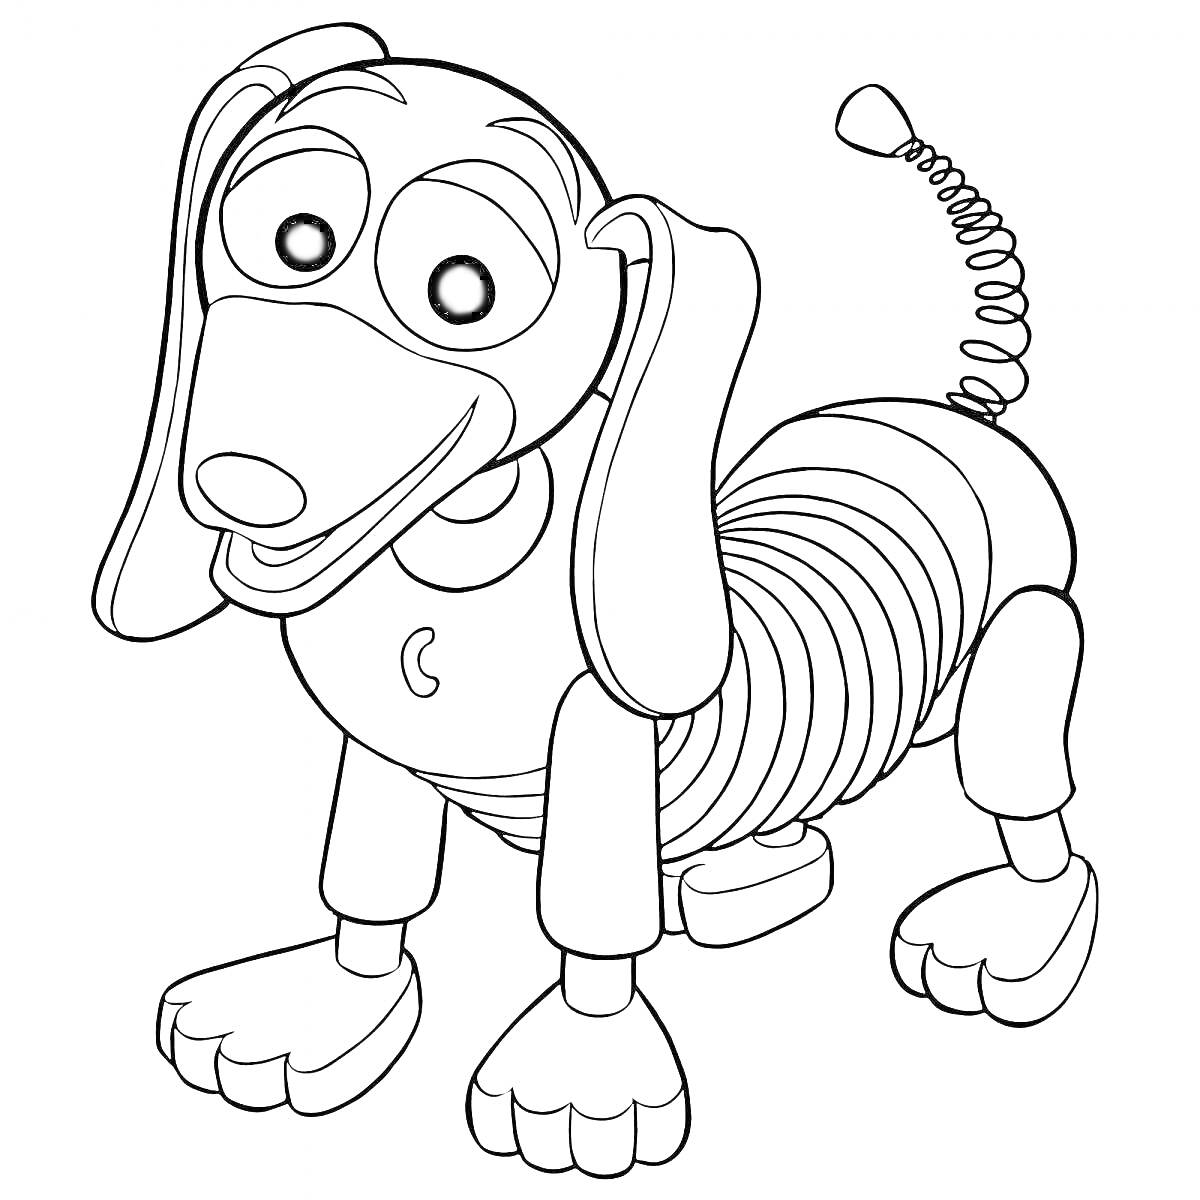 Собака-игрушка с пружиной в виде шпиц-терьера с большими глазами и закручивающимся хвостом